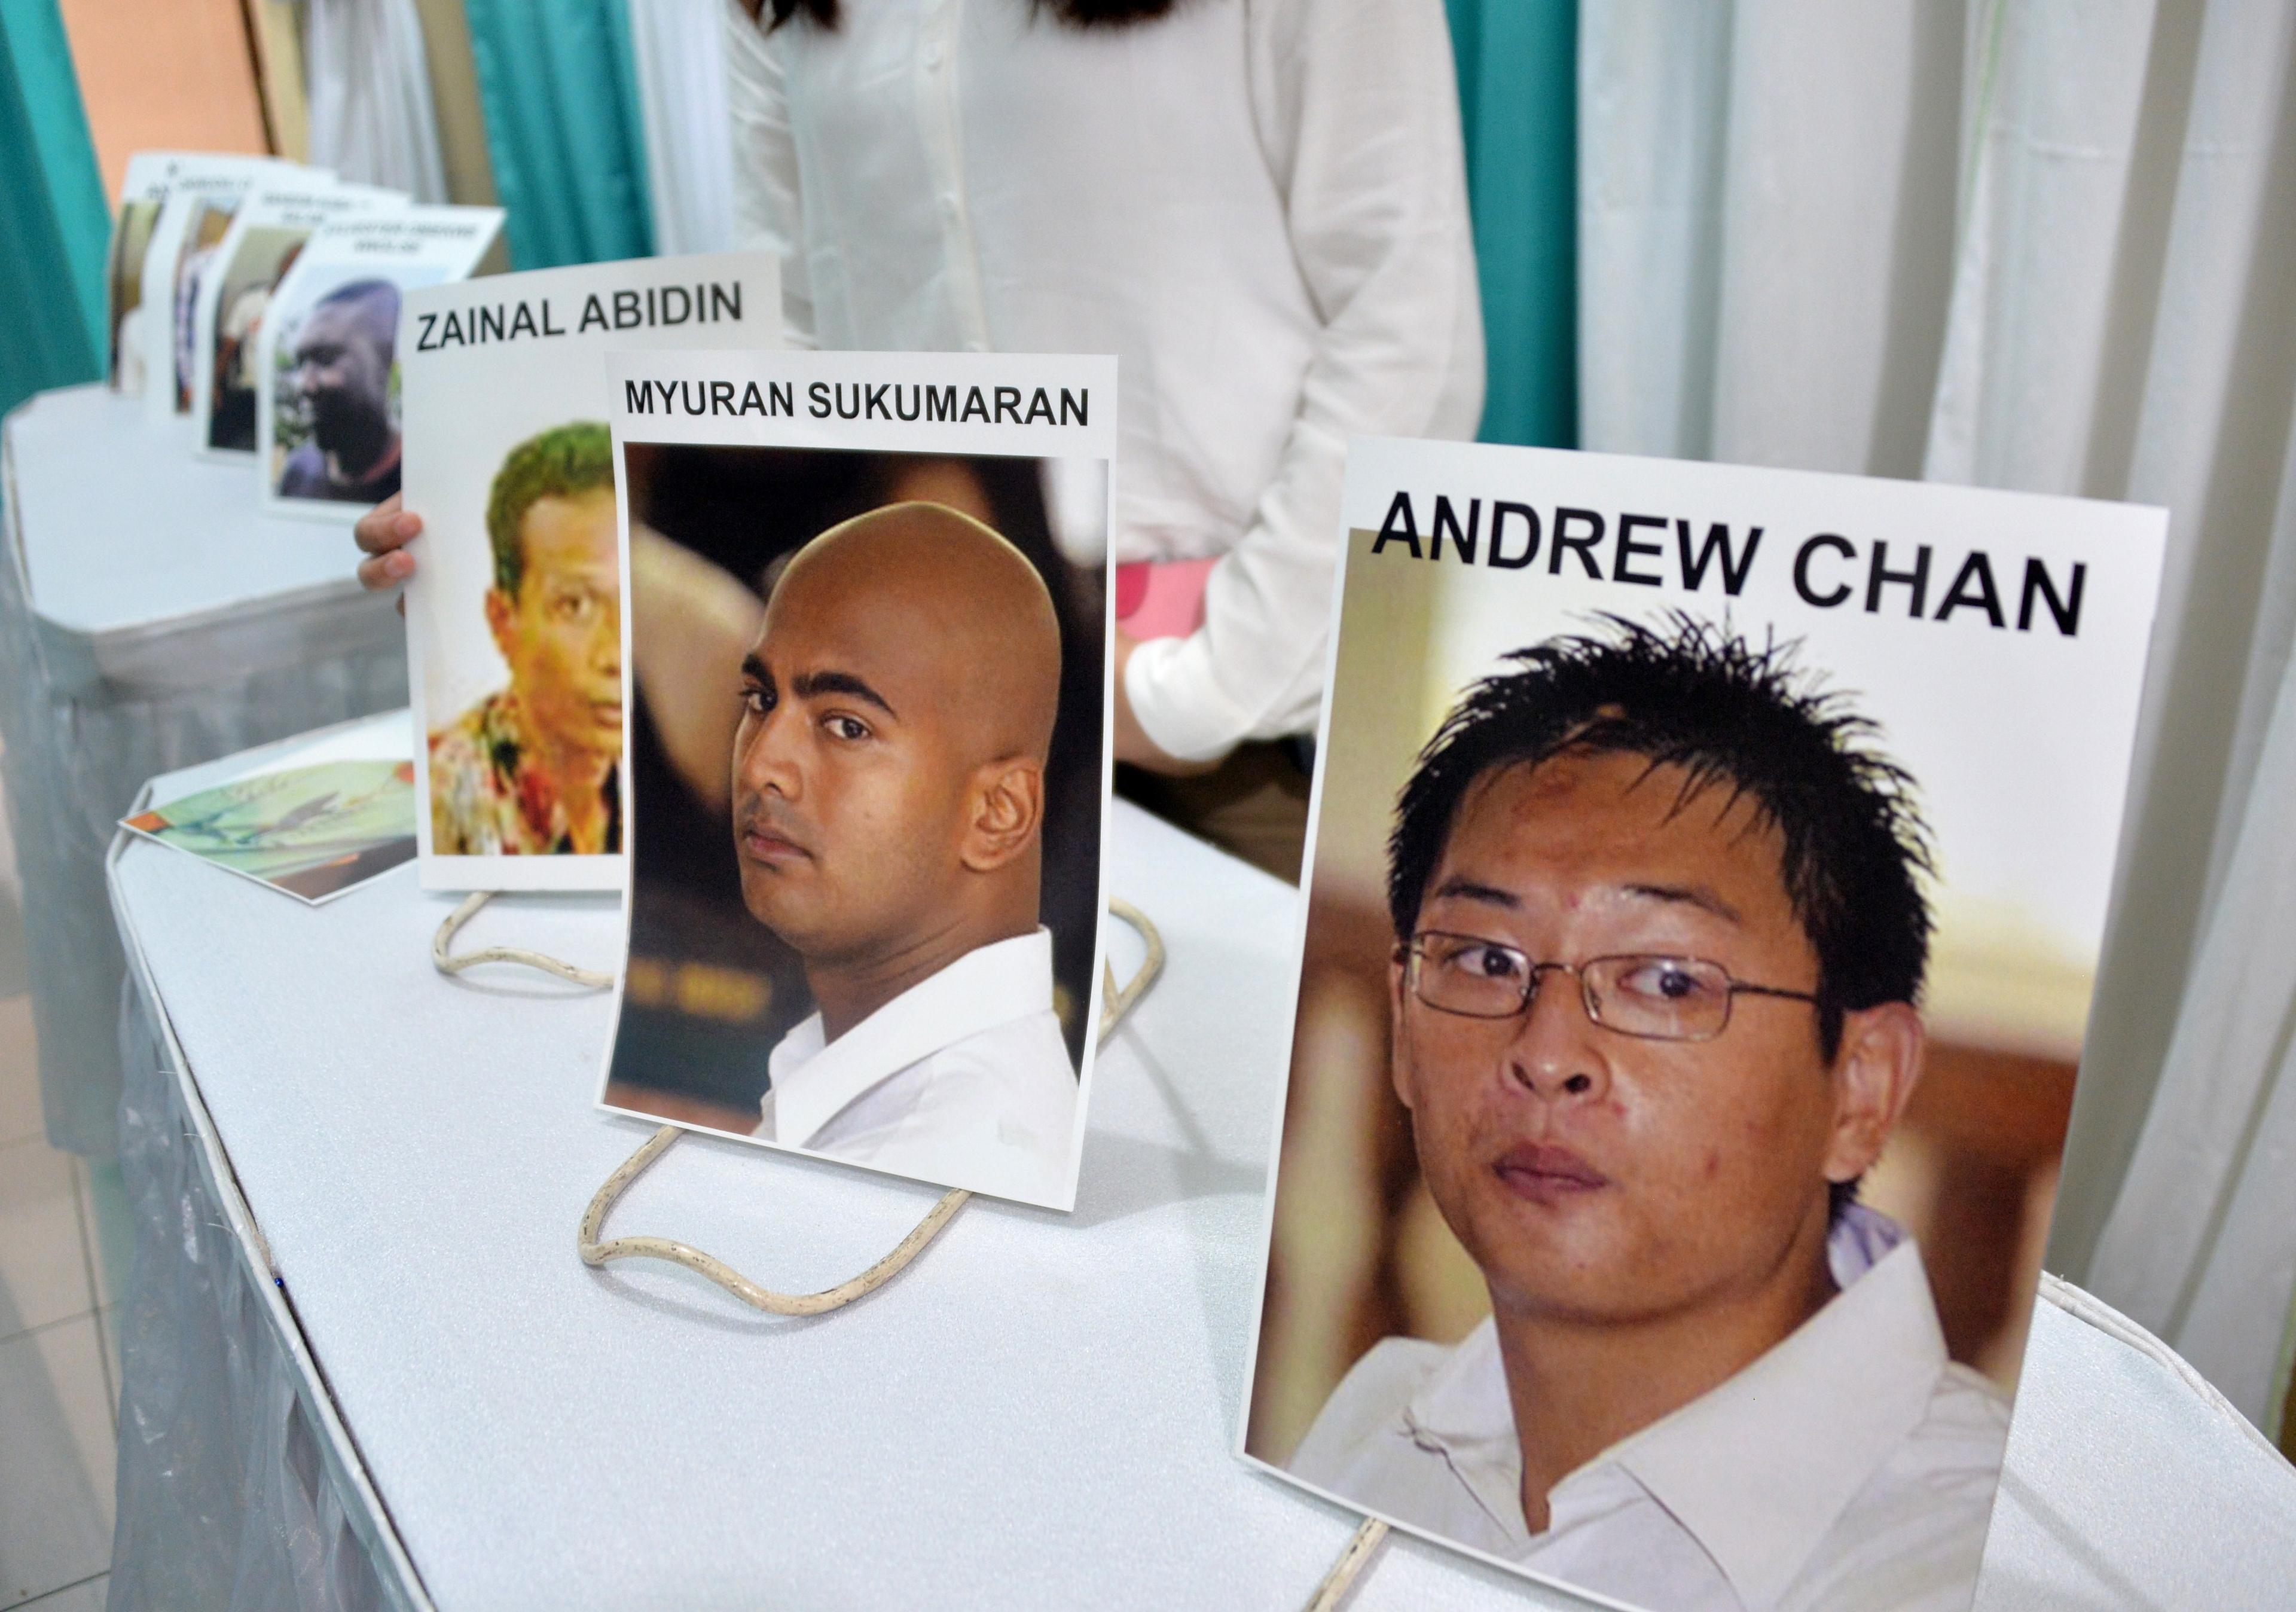 Bilder på avrättade personer som dömts för drogrelaterade brott visas på ett sjukhus i Jakarta den 29 april 2015. (Foto: Bay Ismoyo/Getty Image)